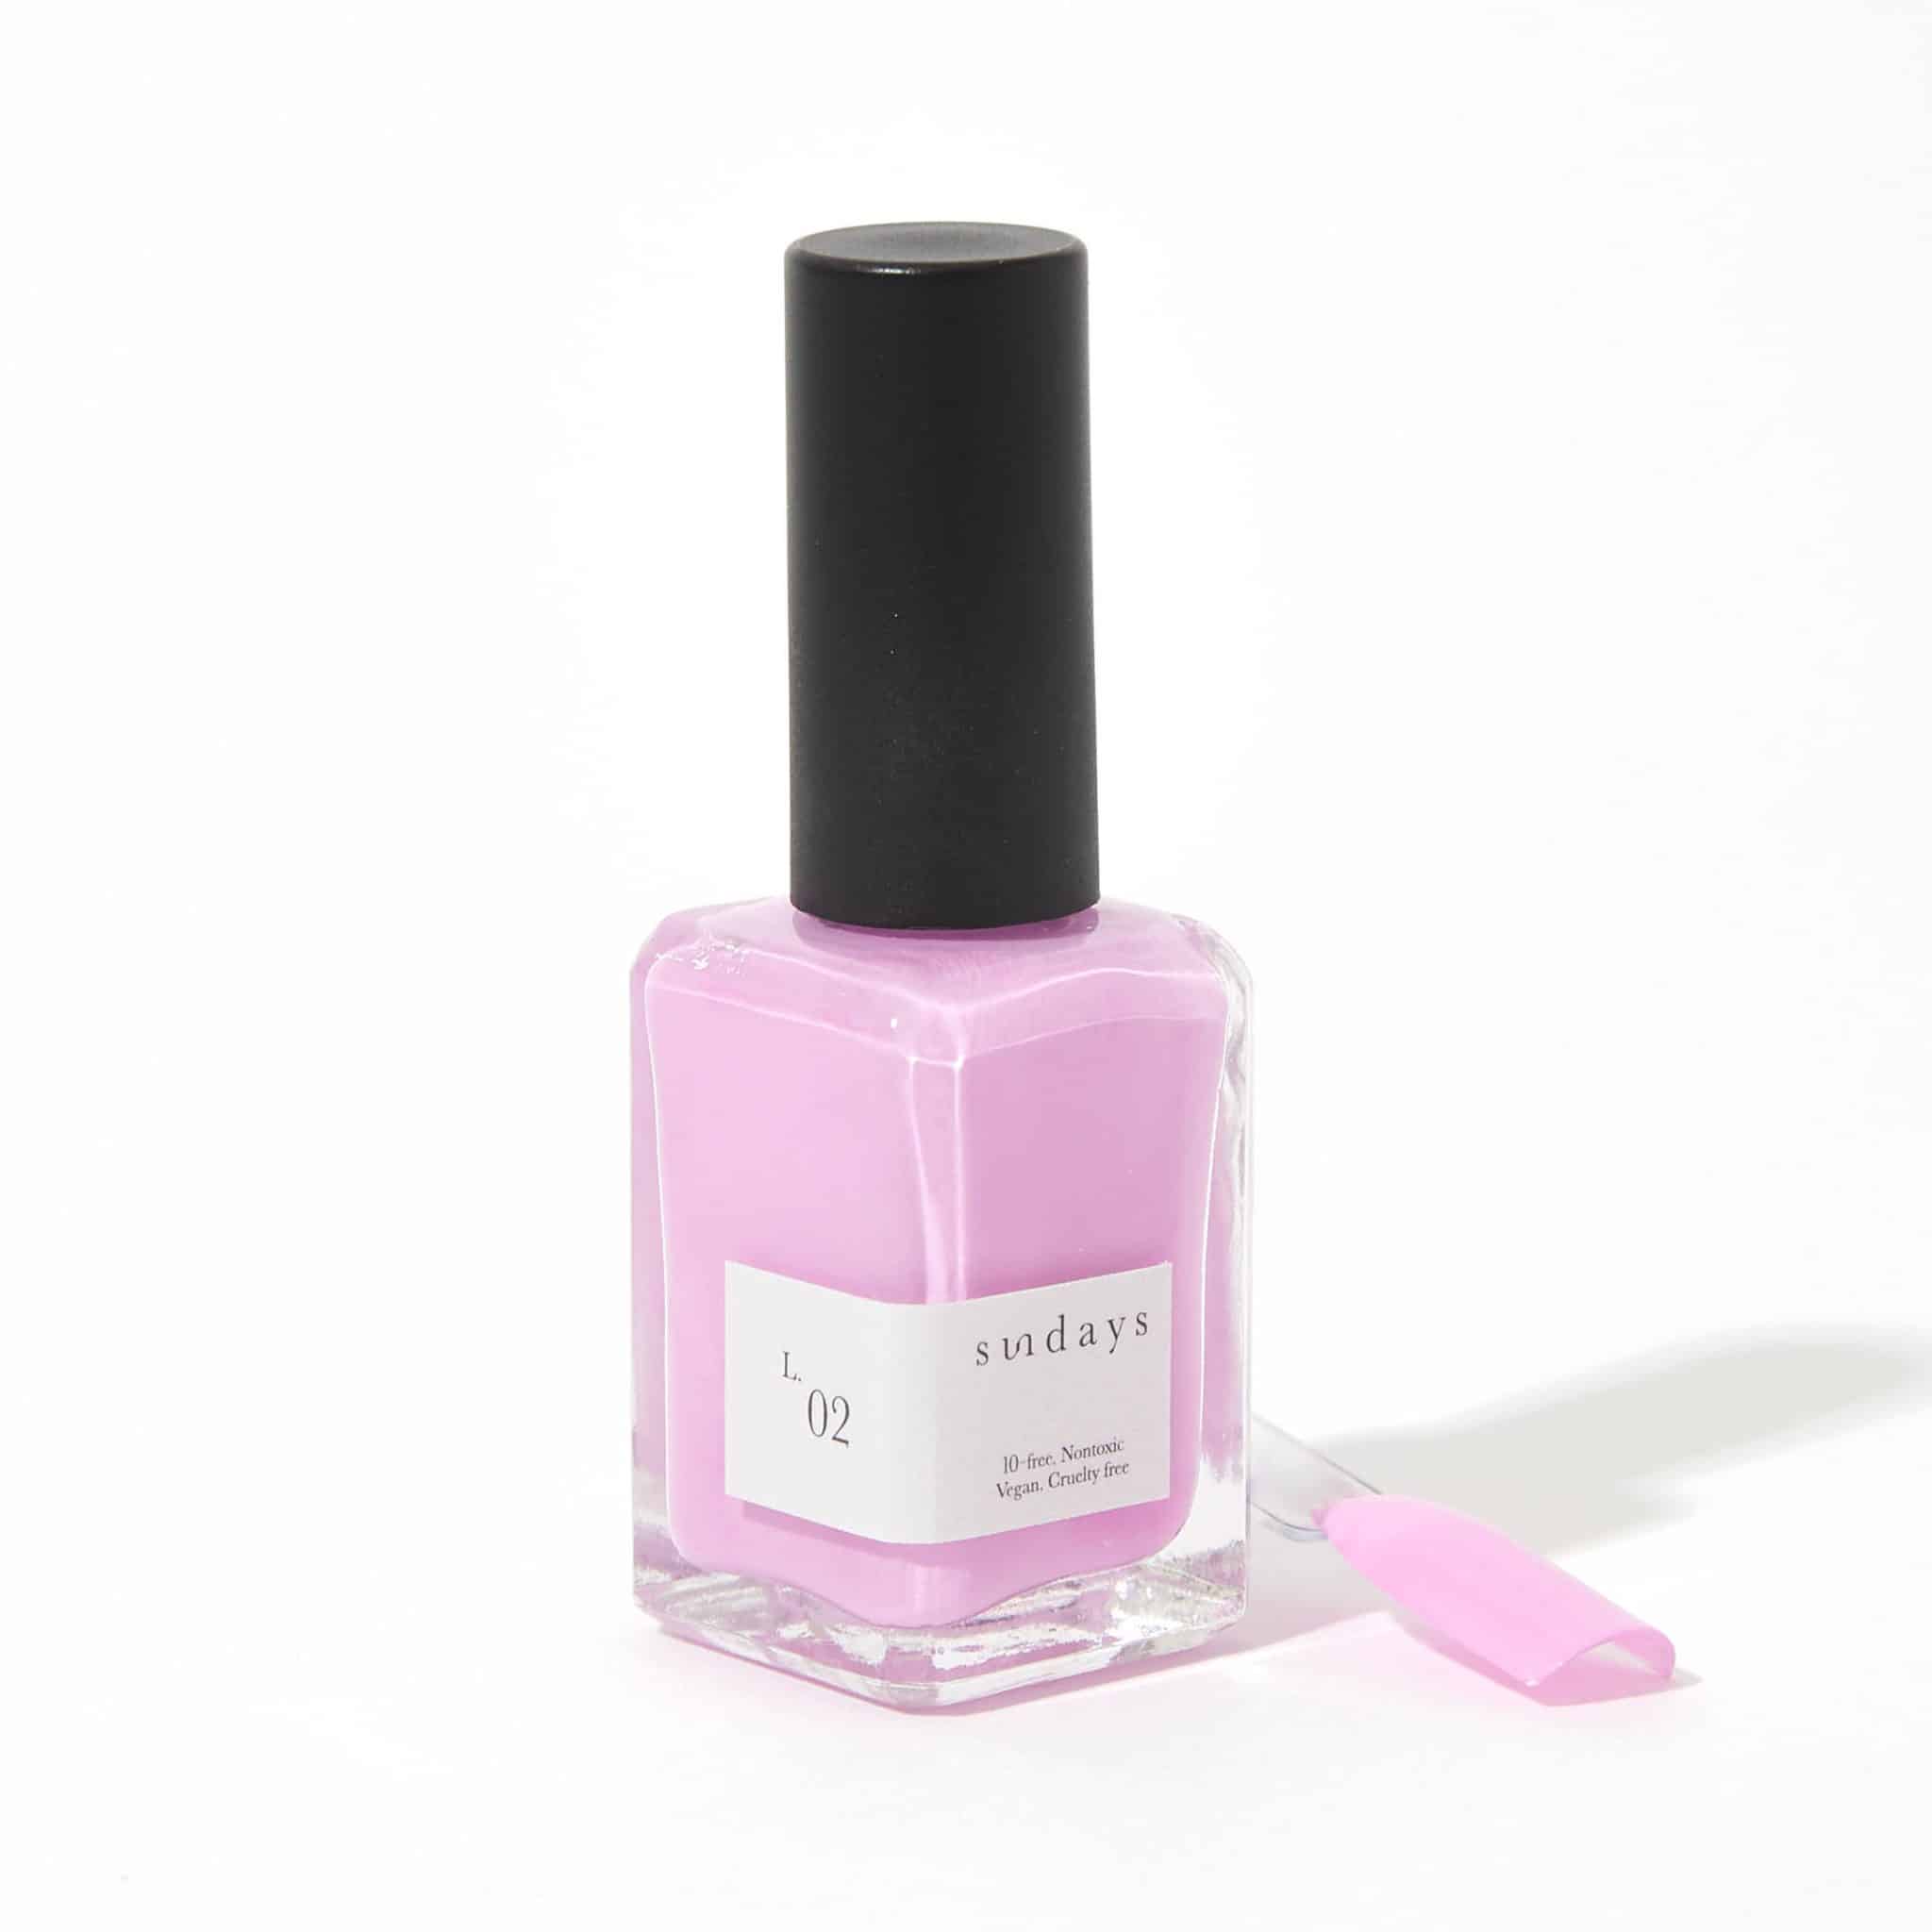 non-toxic nail polish in pink